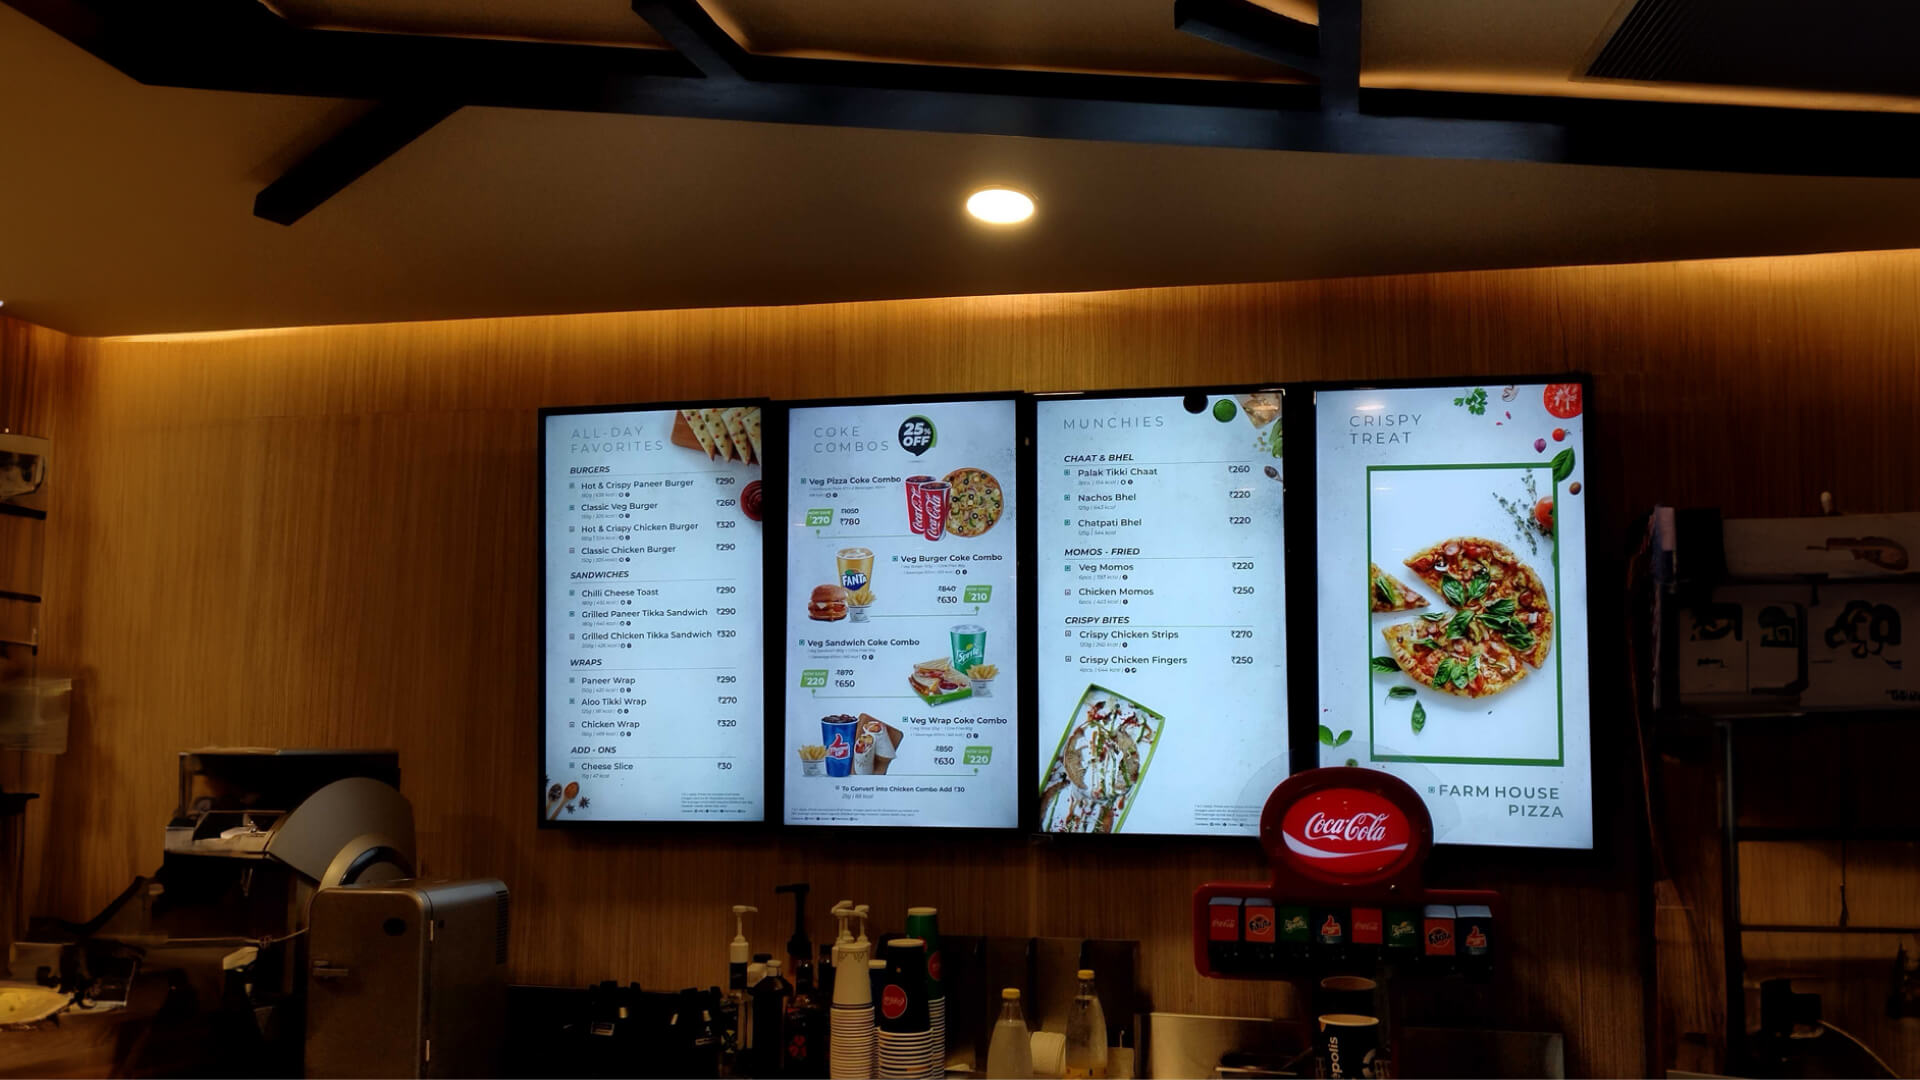  A digital menu idea showcasing the area's specialities